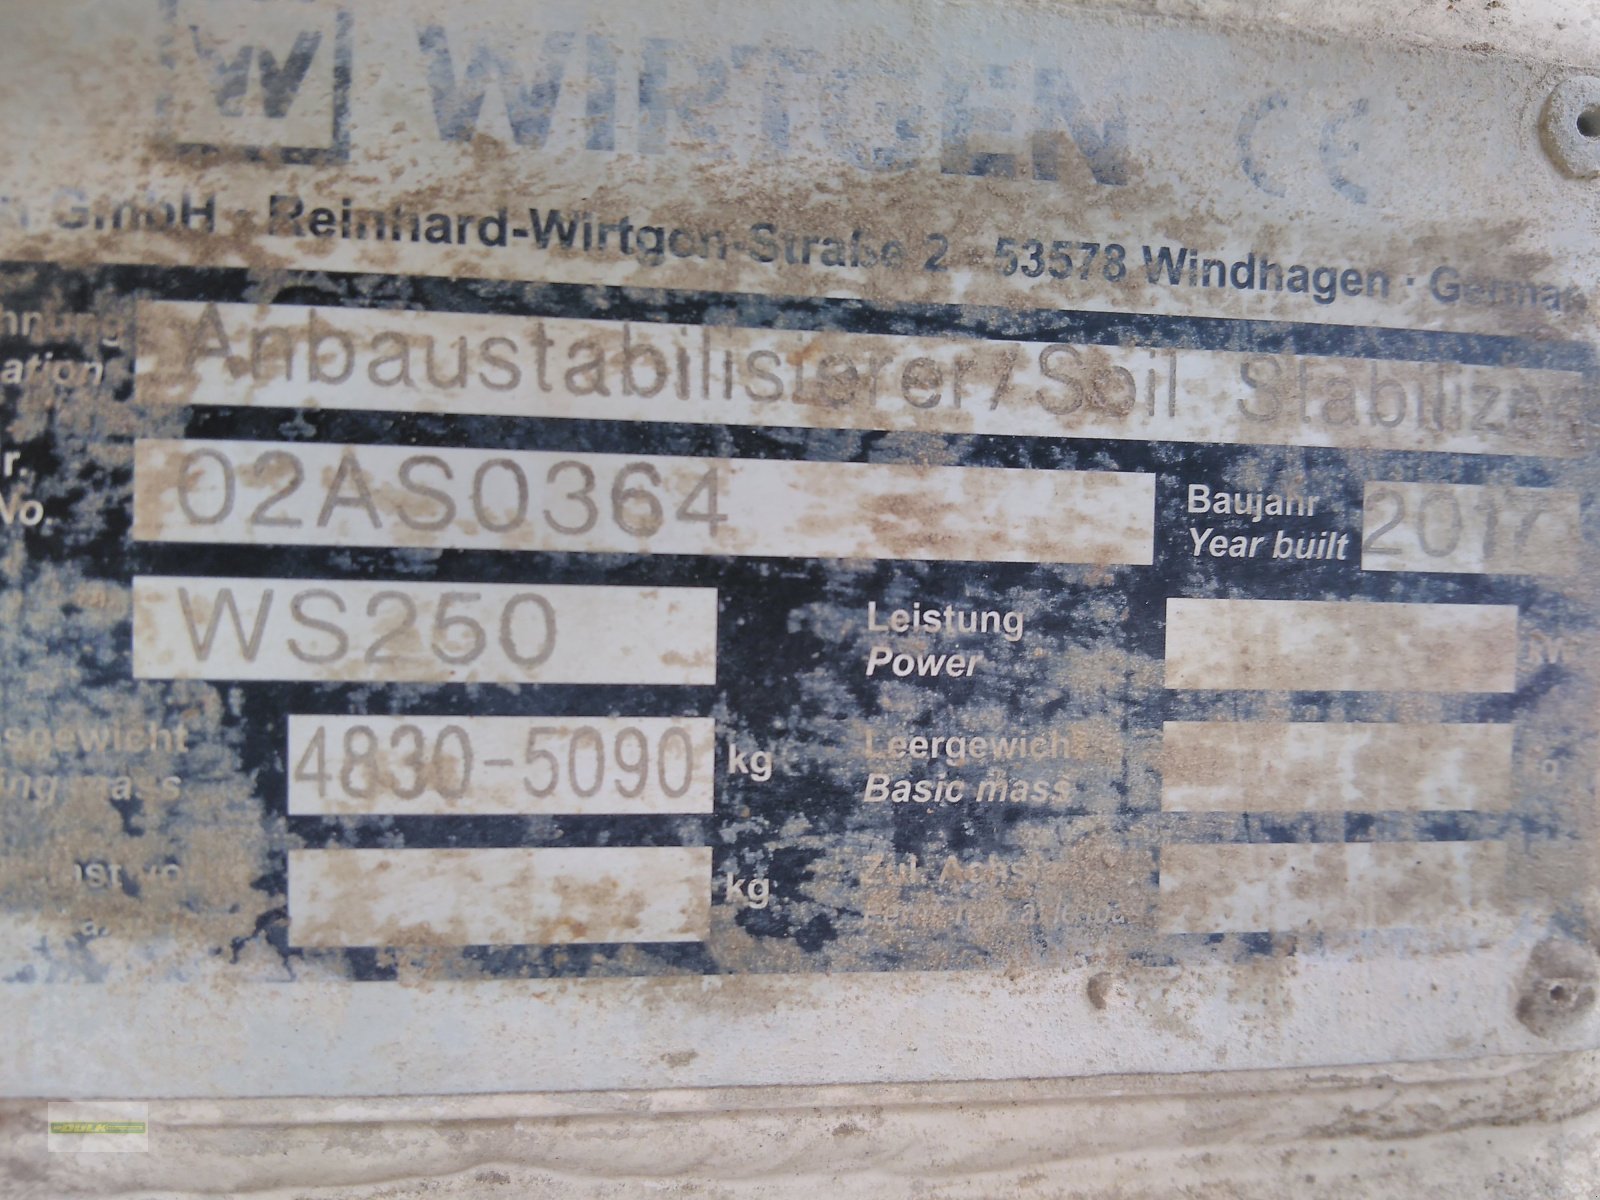 Bodenfräse des Typs Wirtgen WS 250, Gebrauchtmaschine in Donnersdorf (Bild 3)